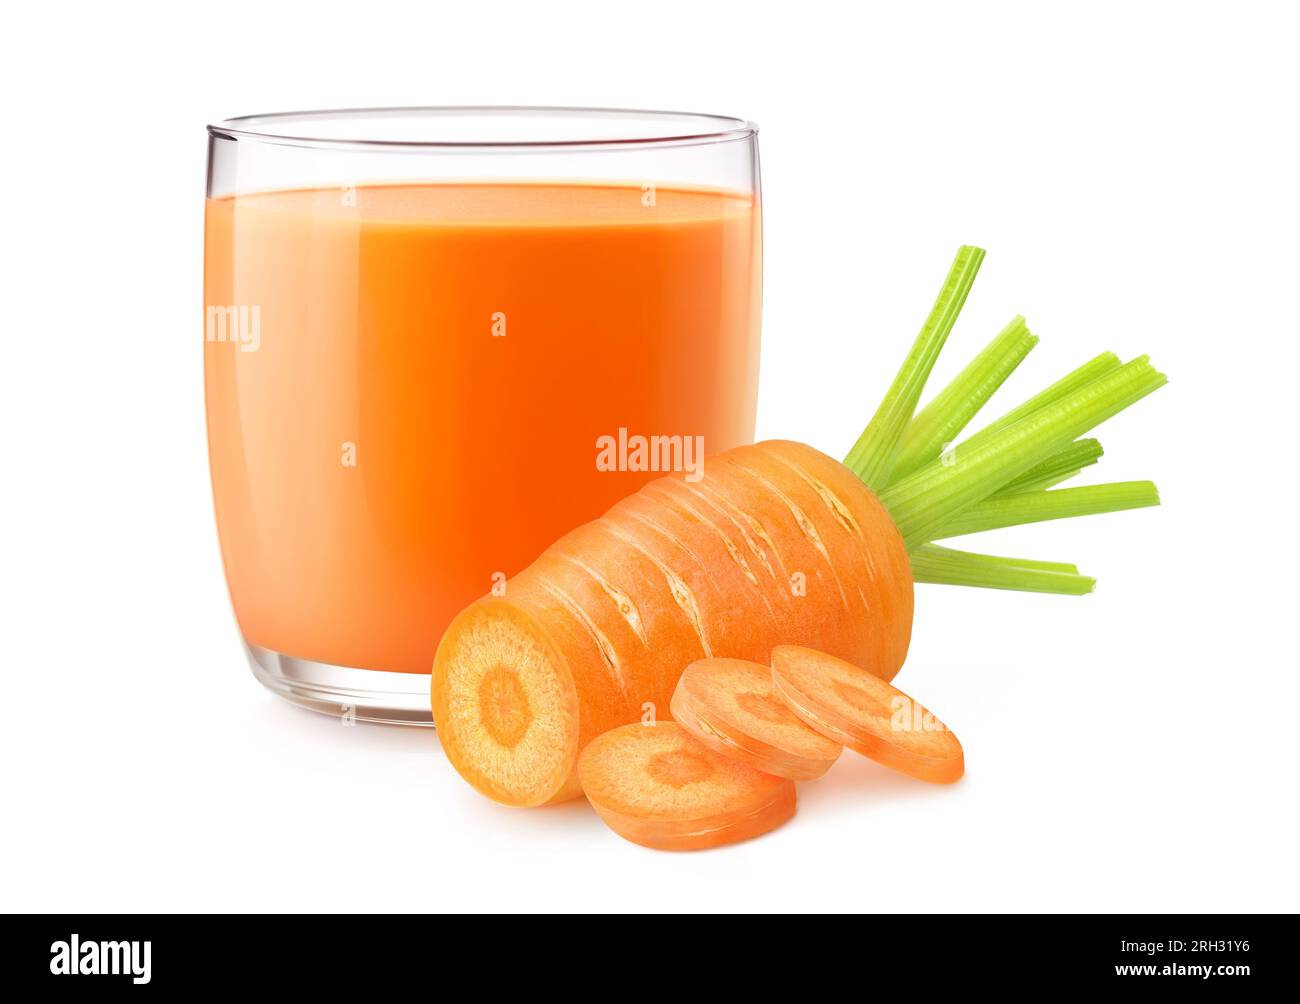 Jus de carotte dans un verre et carotte coupée, isolé sur fond blanc Banque D'Images